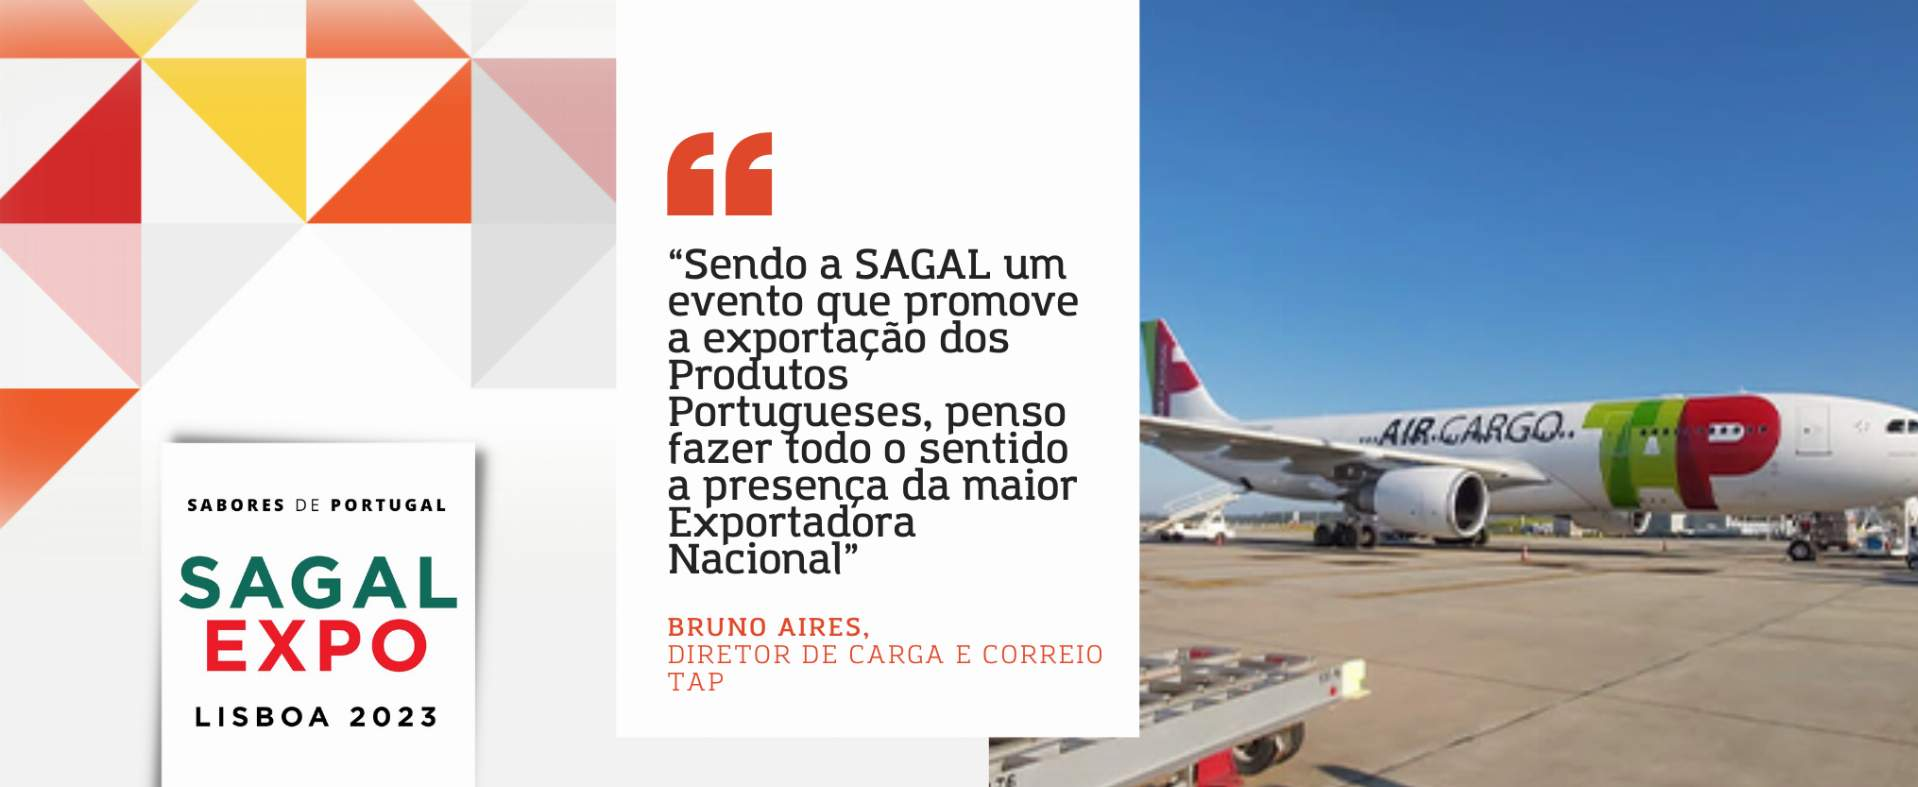 TAP Air Cargo: “Sendo a SAGAL um evento que promove a exportação dos Produtos Portugueses, penso fazer todo o sentido a presença da maior Exportadora Nacional”